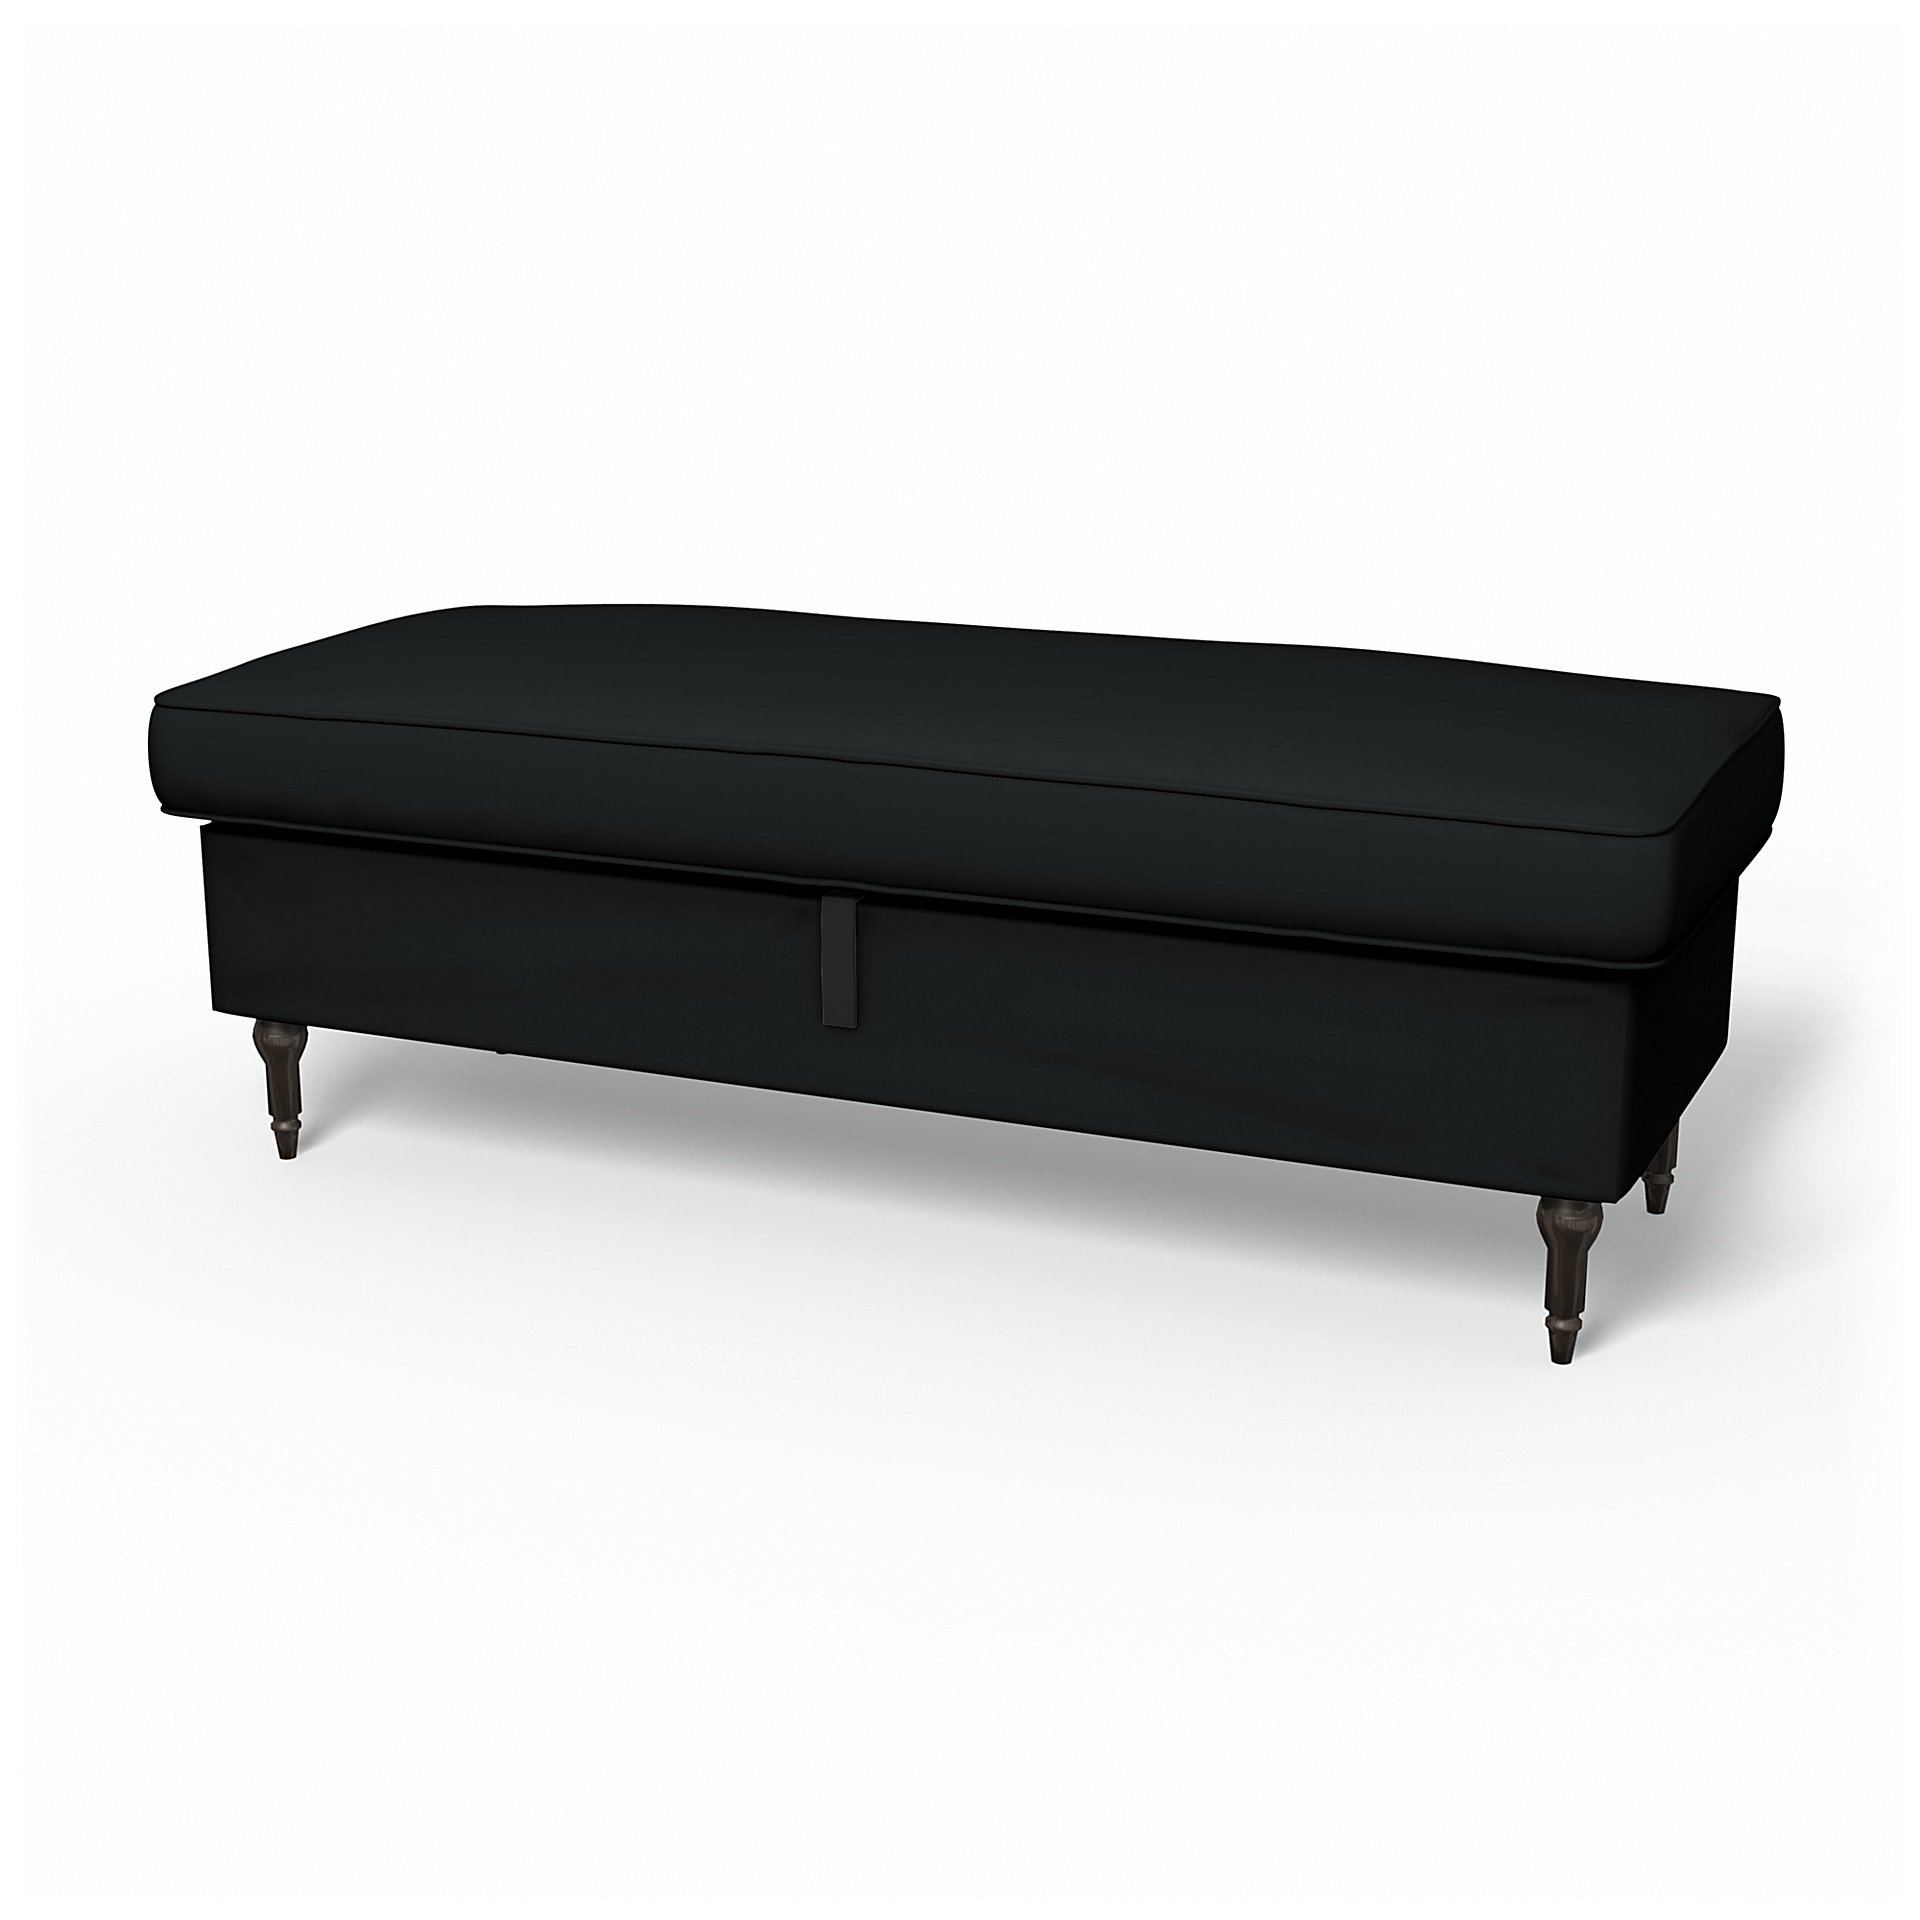 IKEA - Stocksund Bench Cover, Jet Black, Cotton - Bemz